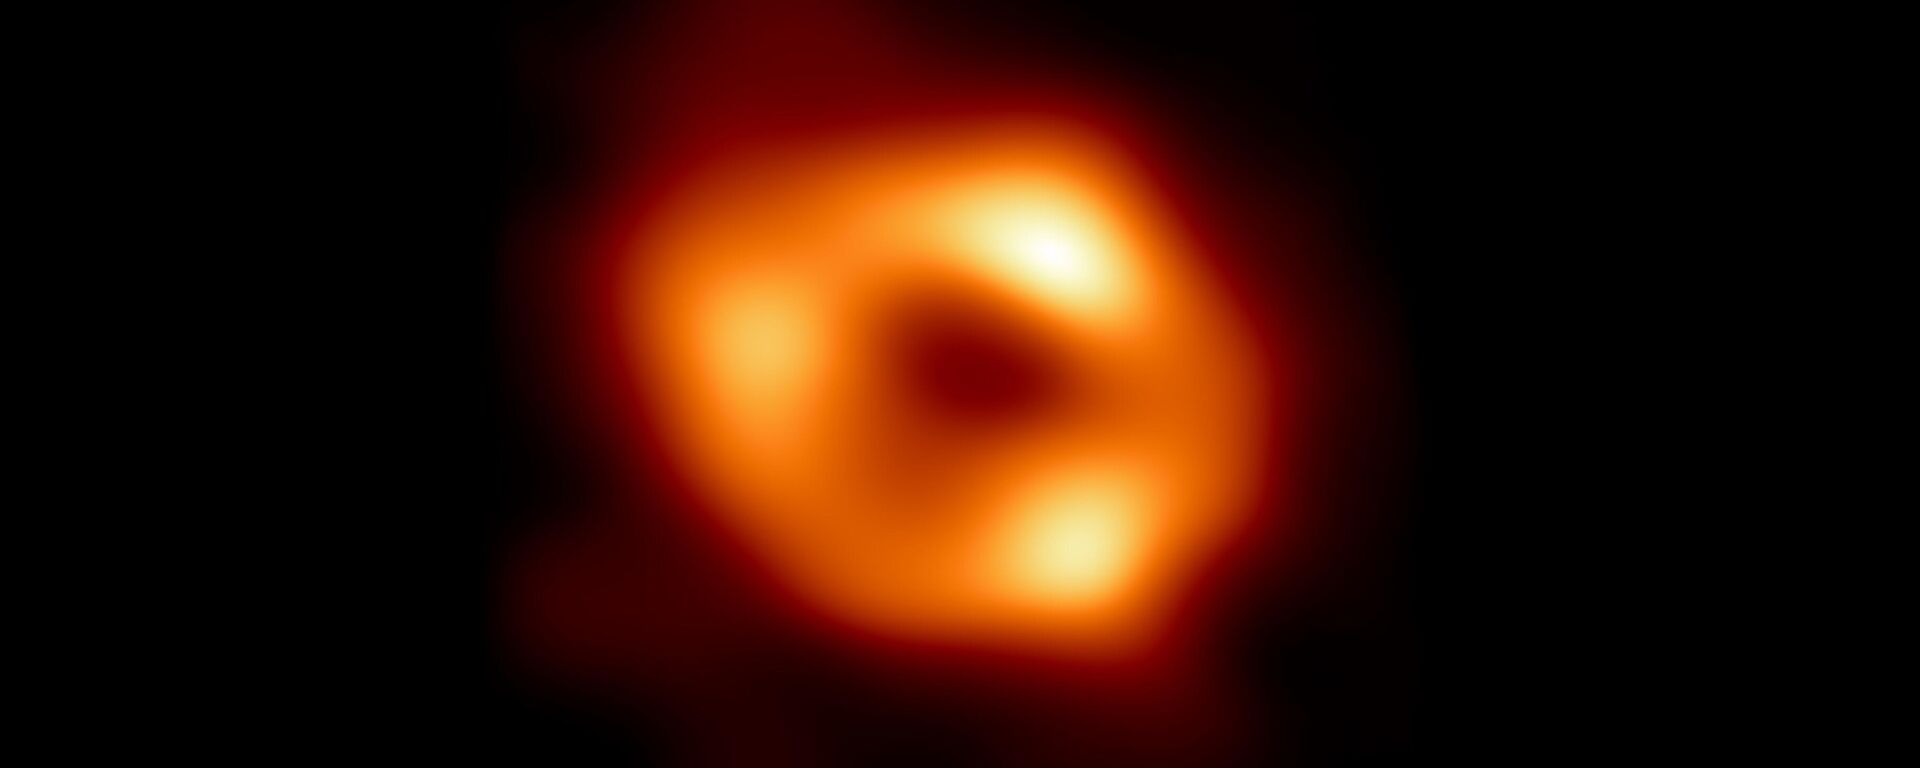 世界で初めて撮影された天の川銀河のブラックホールの写真 - Sputnik 日本, 1920, 13.05.2022